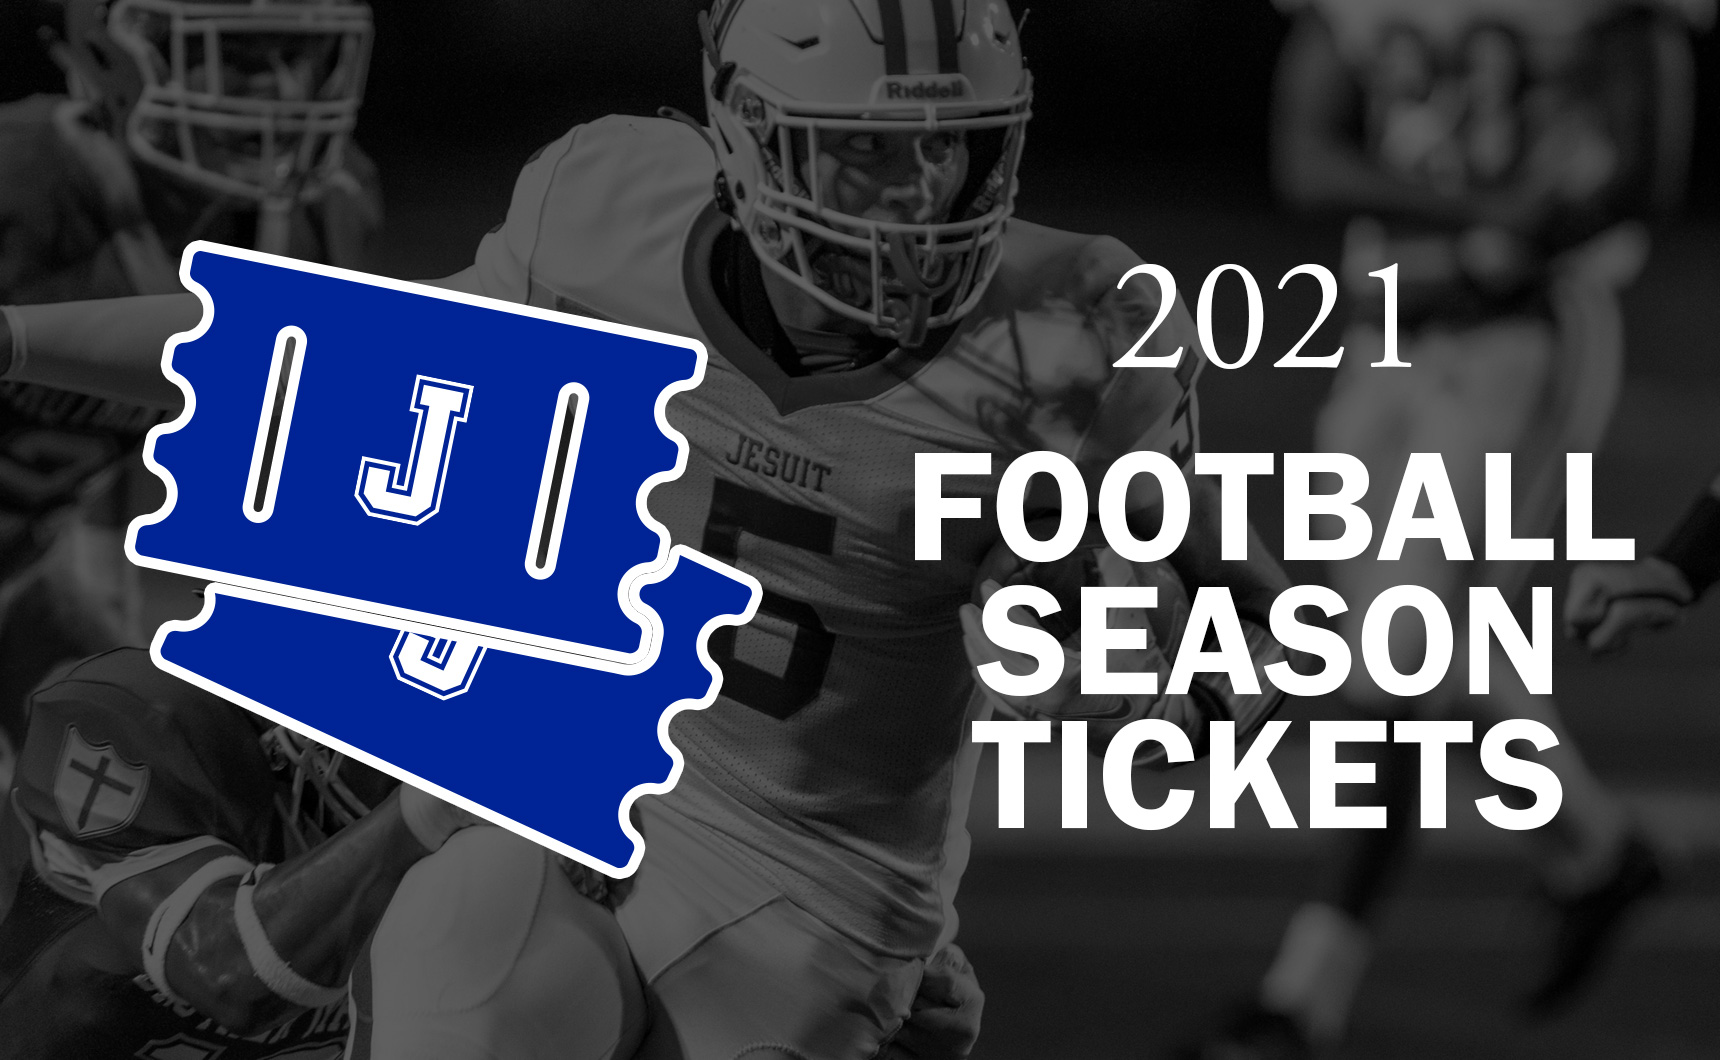 Fall 2021 Football Season Tickets Now on Sale Jesuit High School of